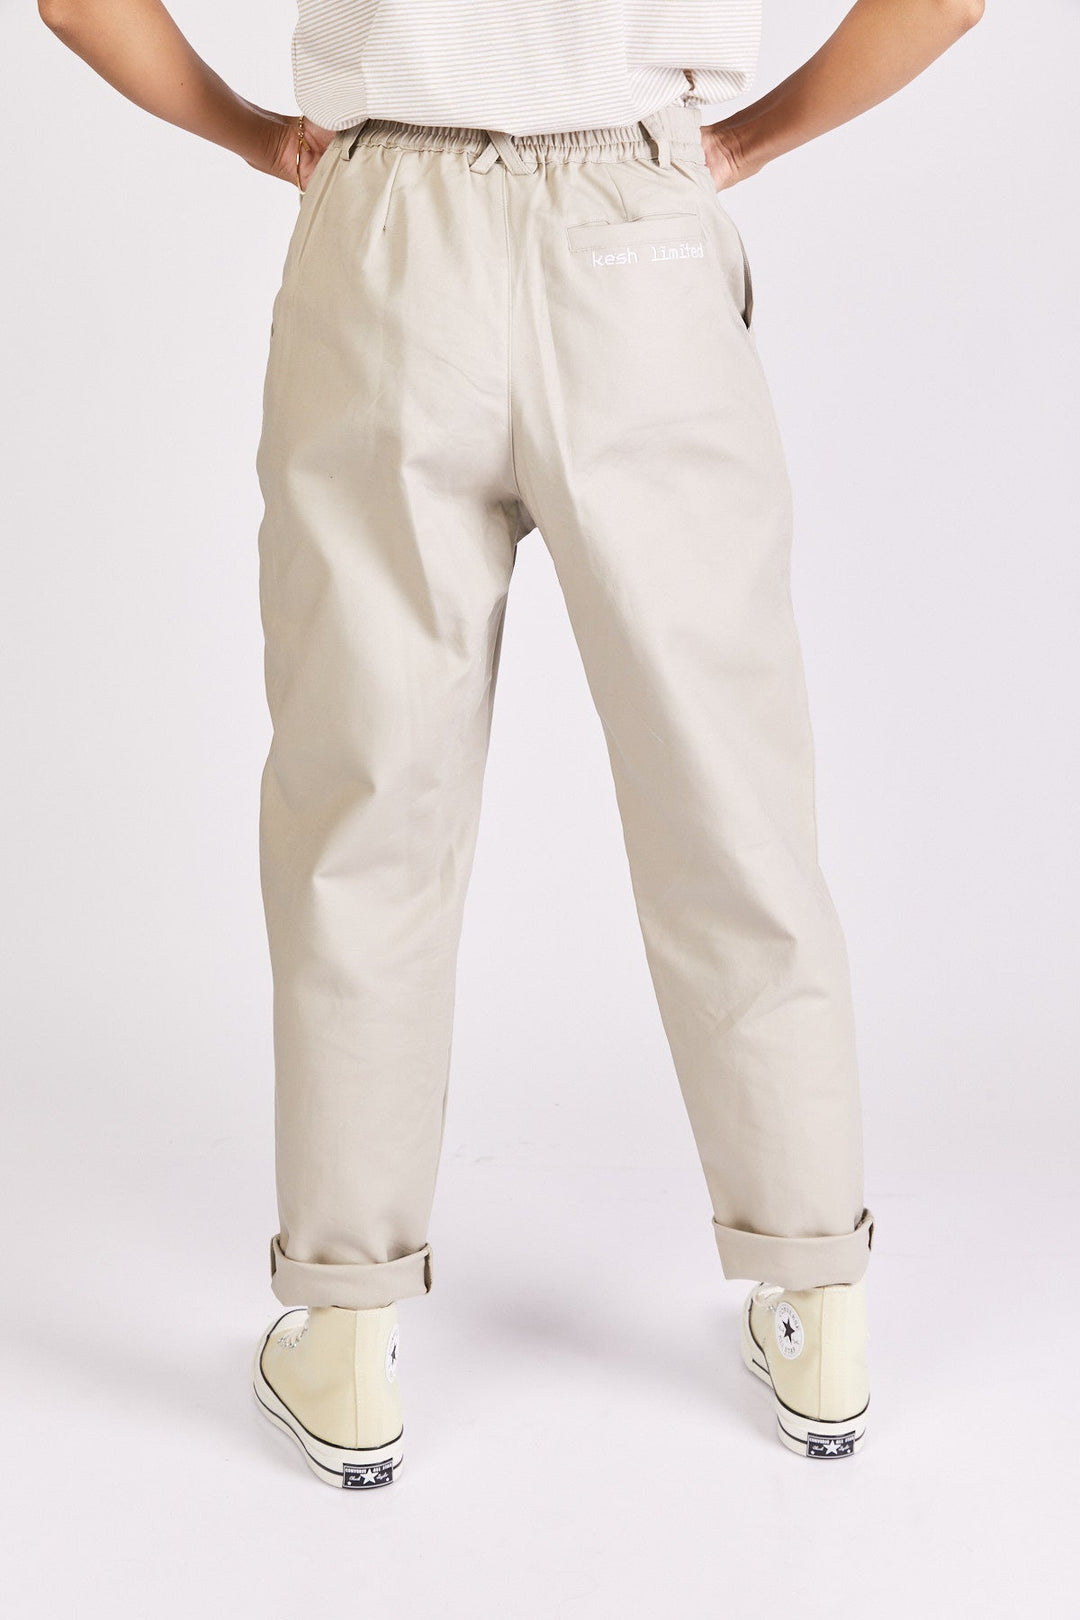 מכנסיים גבוהים פיקסל לוגו בצבע אבן - Kesh Limited